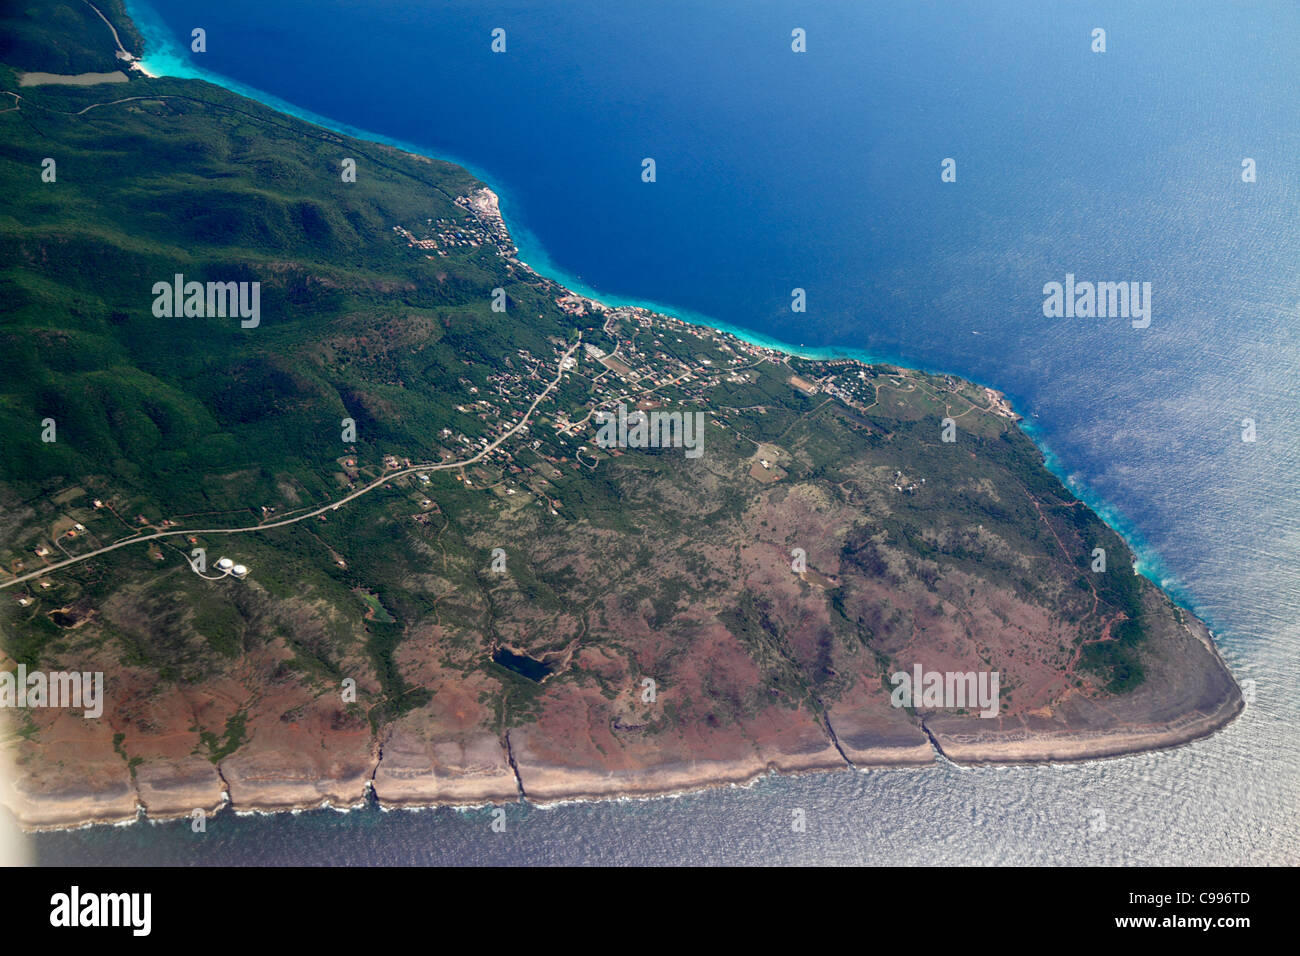 Curaçao,pays-Bas Lesse Leeward Antilles,ABC Islands,Dutch,Westpunt,Playa Kalki,Mer des Caraïbes,eau,vue aérienne au-dessus,American Airlin Banque D'Images